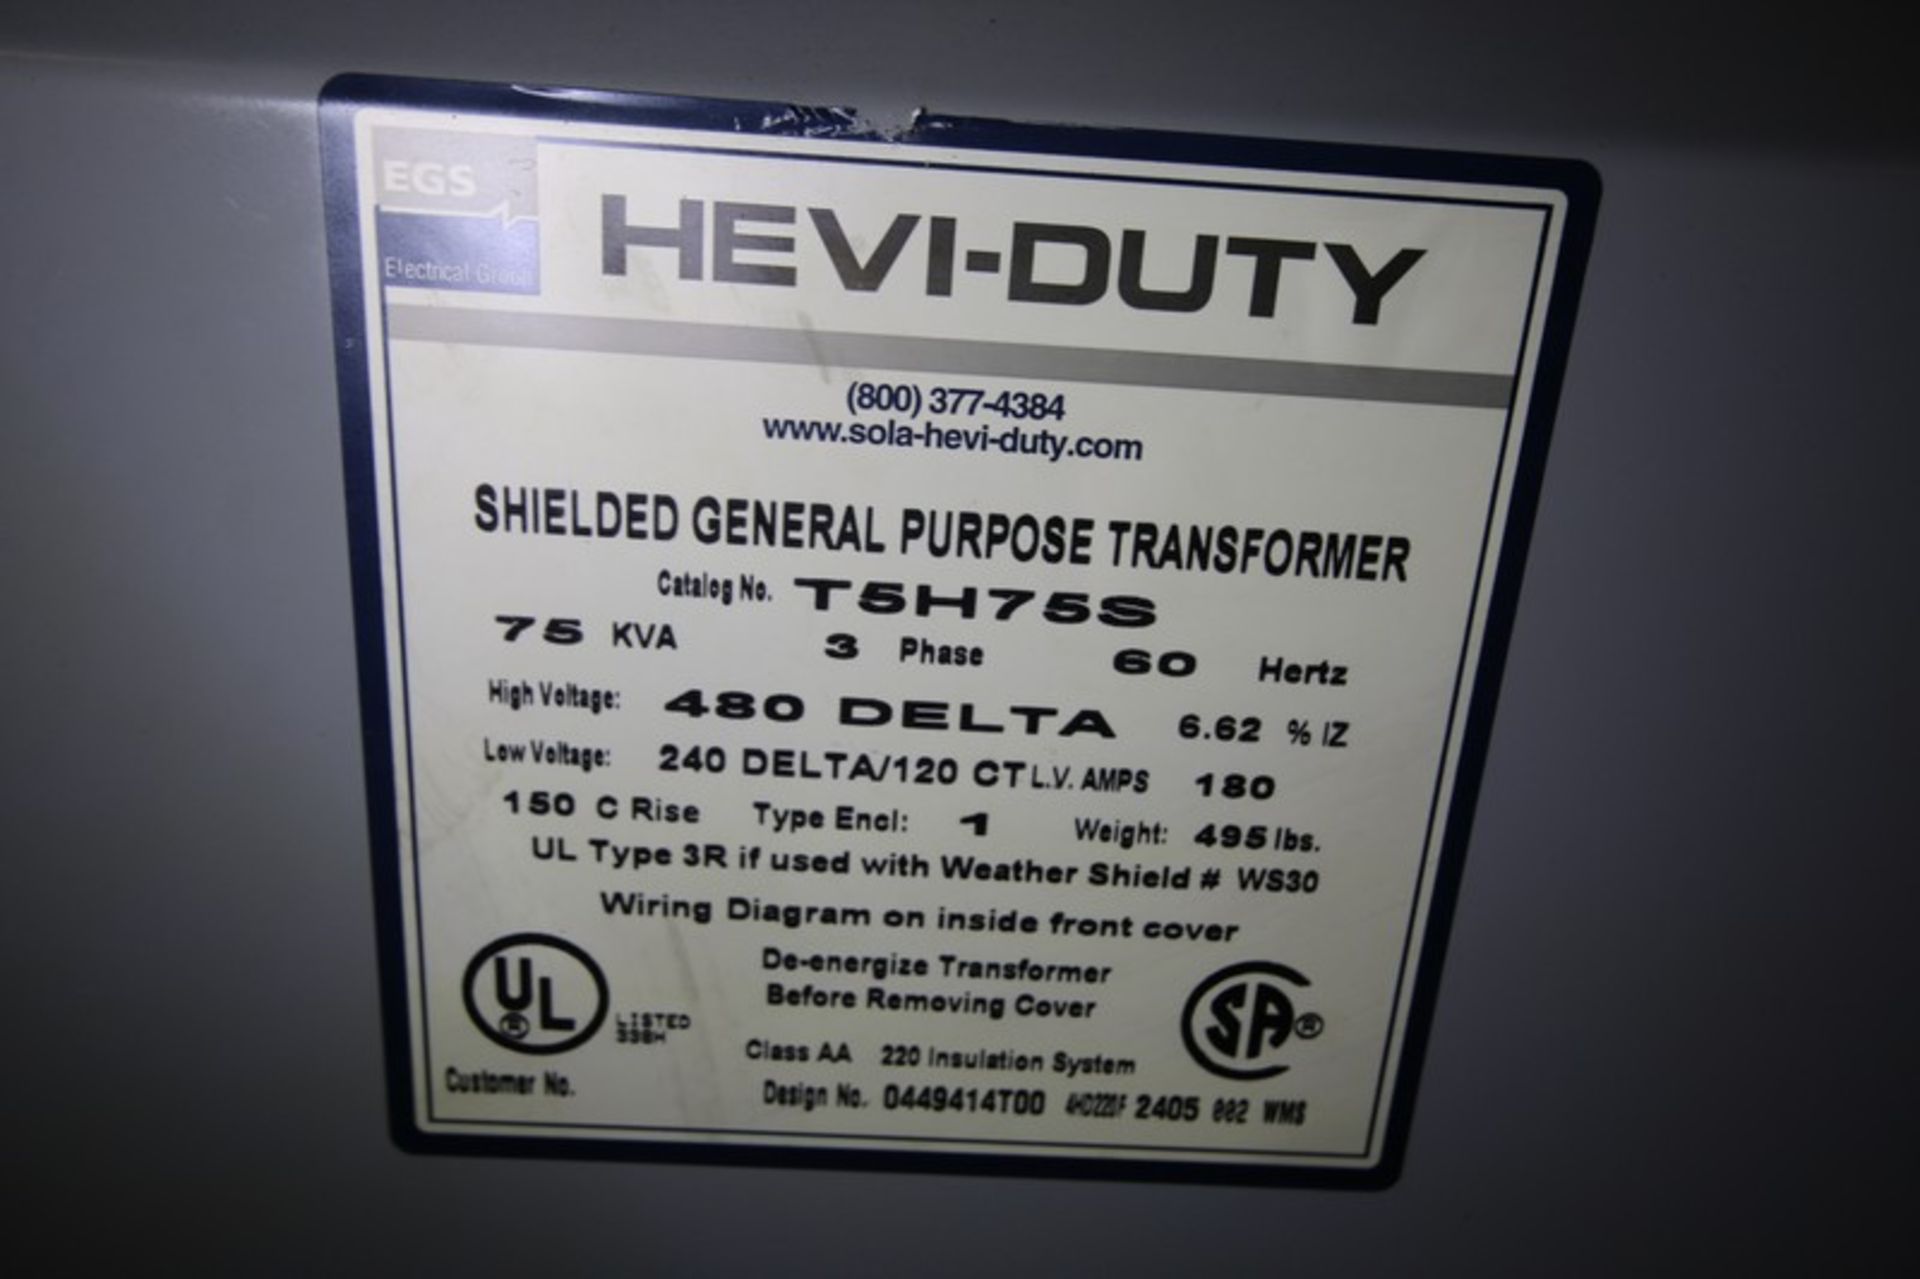 EGS Hevi-Duty 75 KVA Transformer, Cat No T5J5S, High Voltage - 480 Delta, Low Voltage - 240 - Bild 2 aus 7